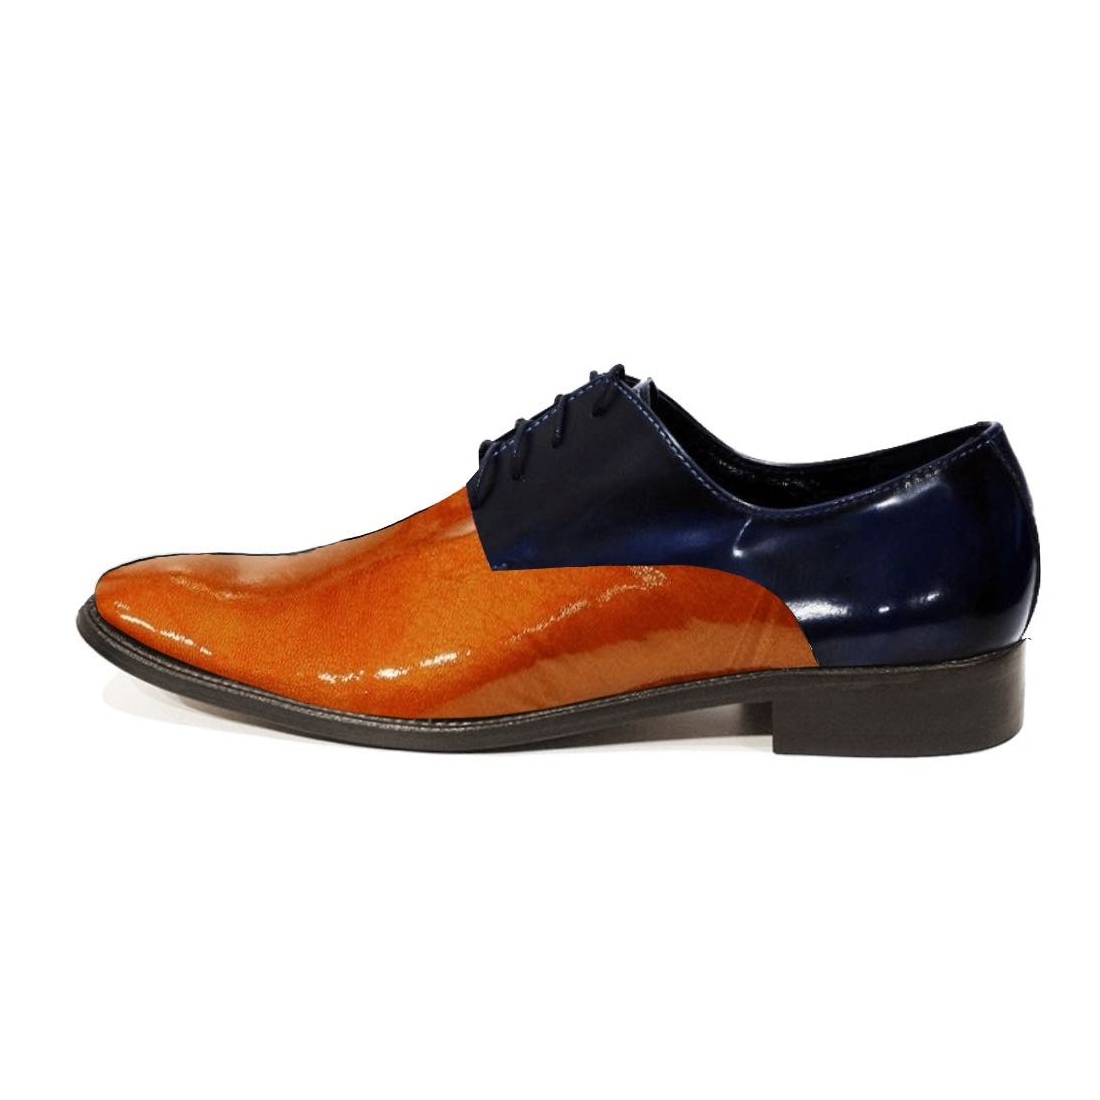 Modello Porellgo - Zapatos Clásicos - Handmade Colorful Italian Leather Shoes